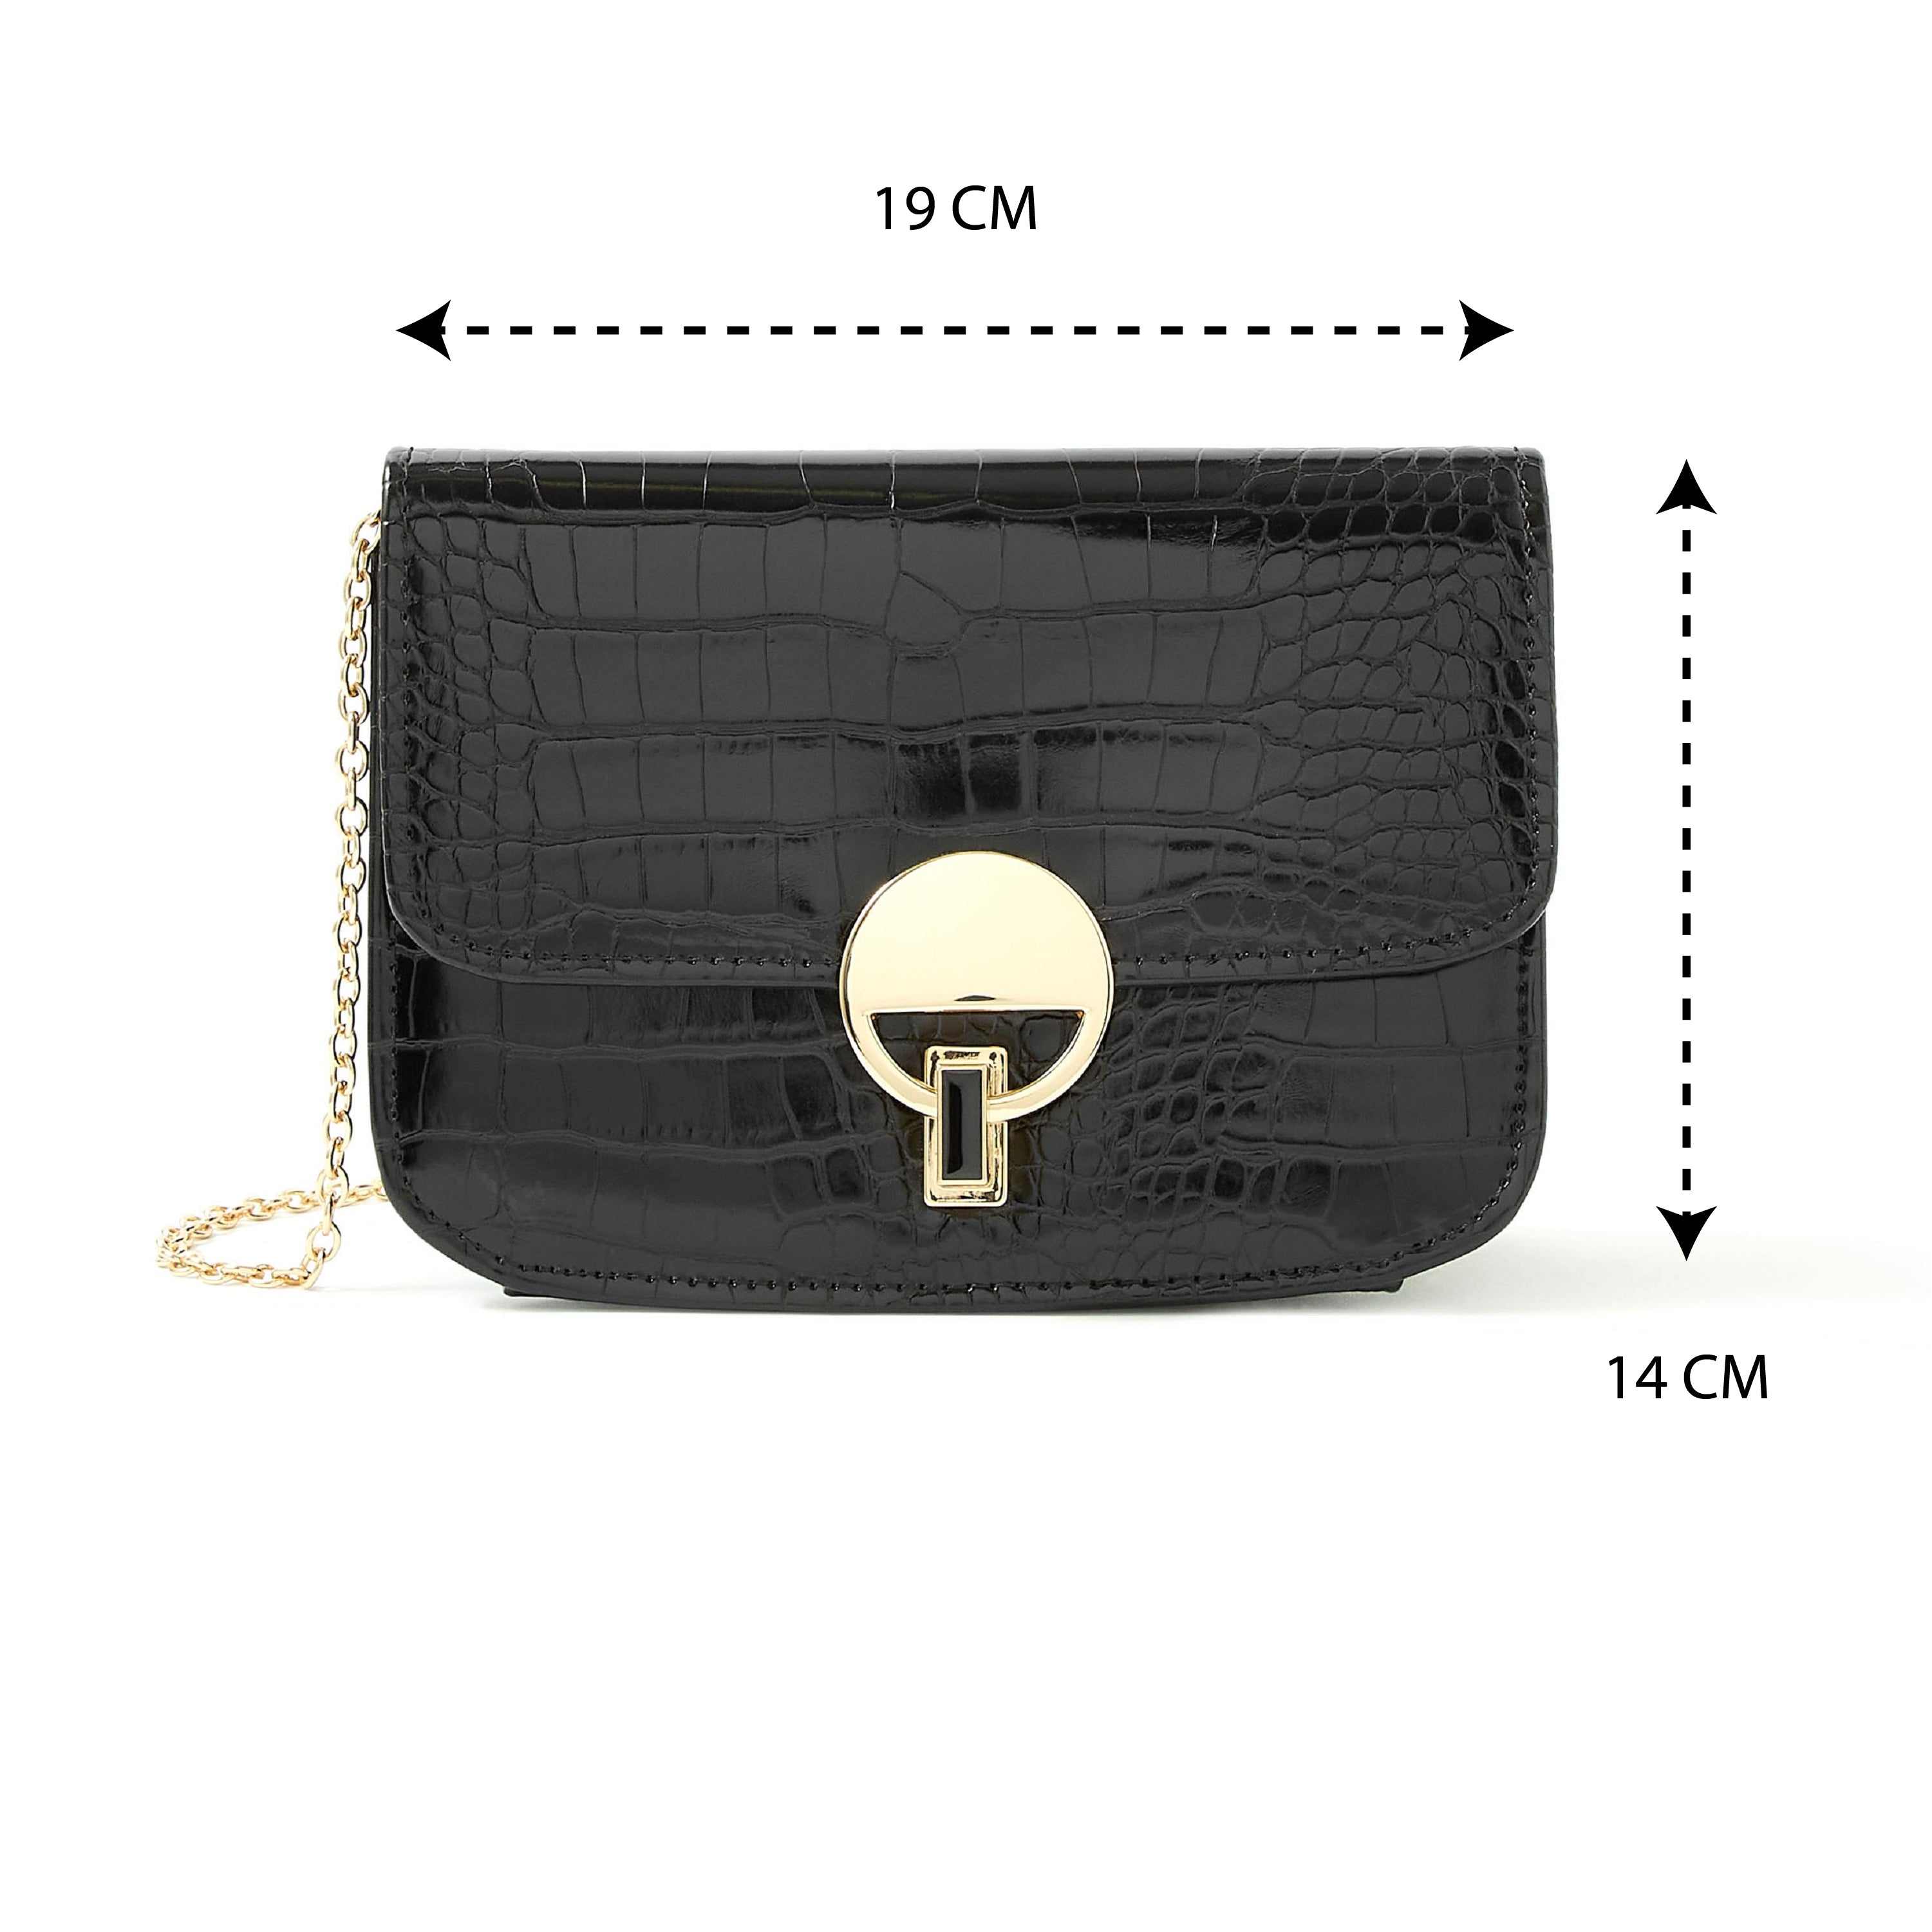 Accessorize London Women's Faux Leather Black Croc Lock Chain Party Bag